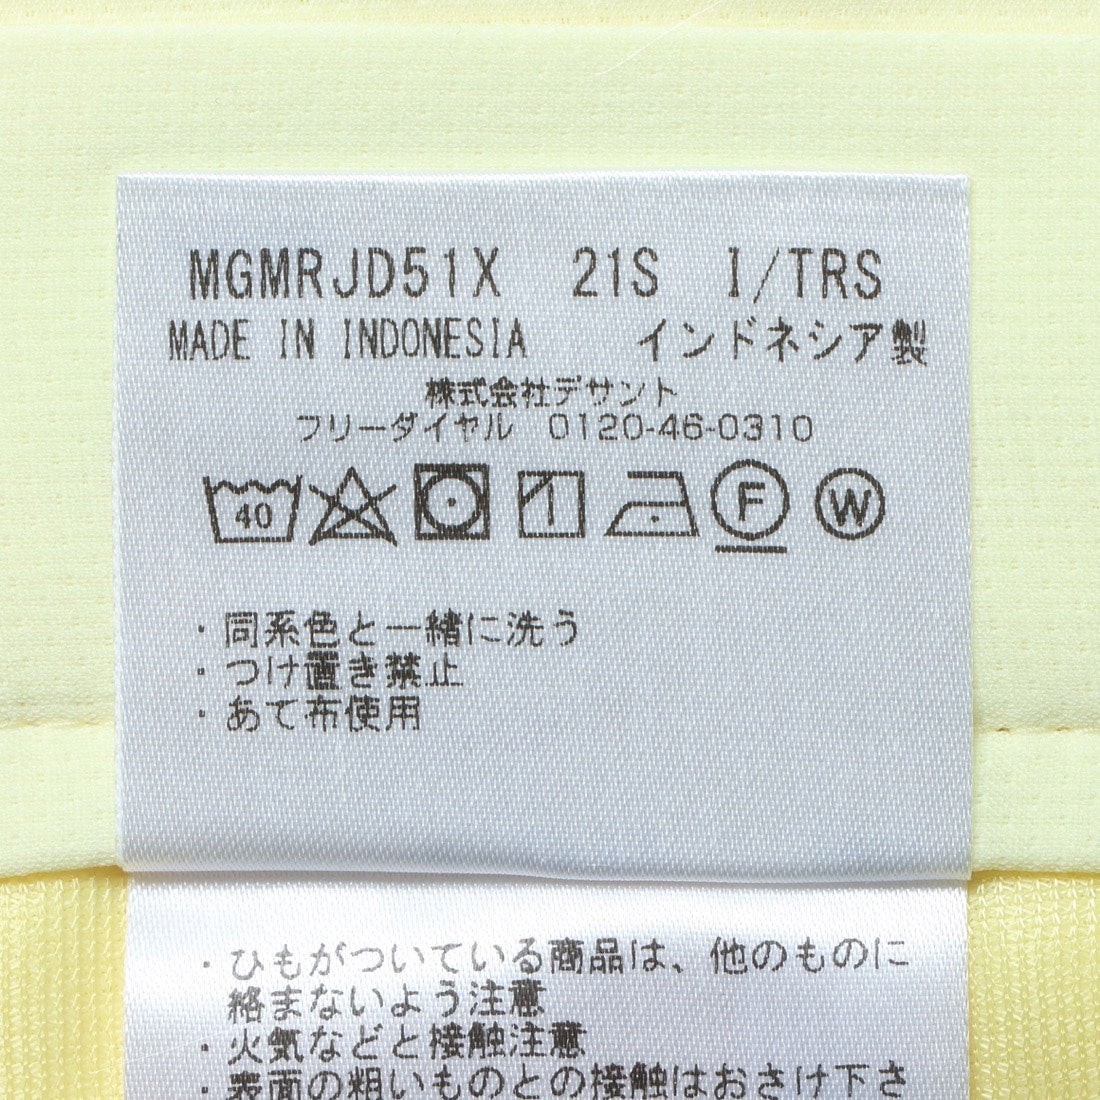  новый товар внутренний стандартный Munsingwear одежда Munsingwear воздушный Lee b Lee z стрейч шорты [ солнечный экран ]((YL00) желтый /84-88)